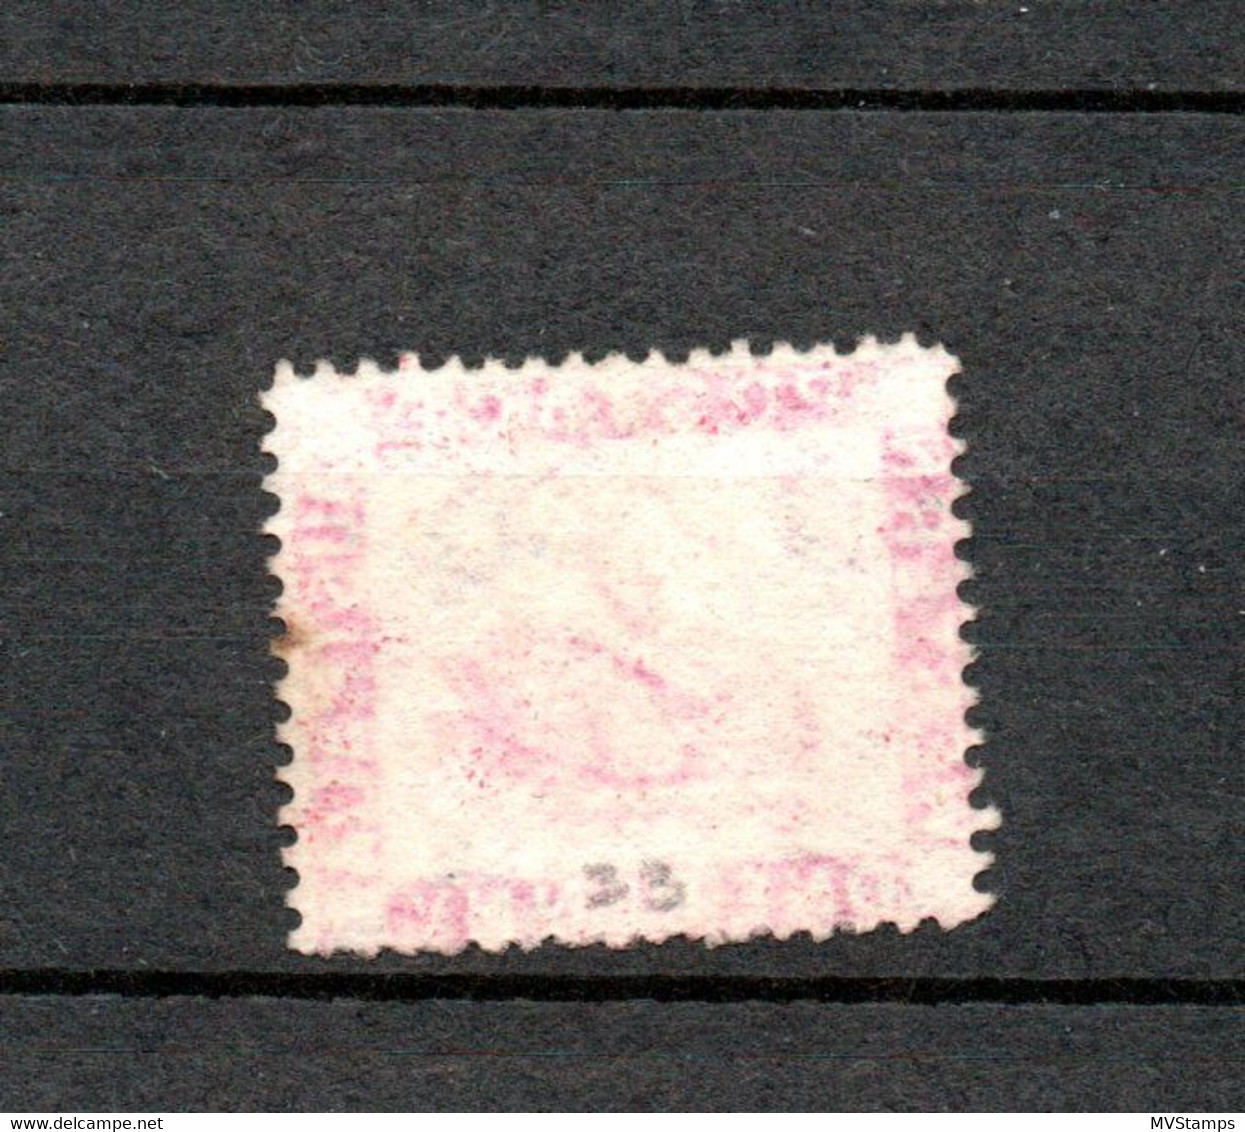 Western Australia 1861 Old Def.Swan Stamp (Michel 9) Nice Used - Gebruikt